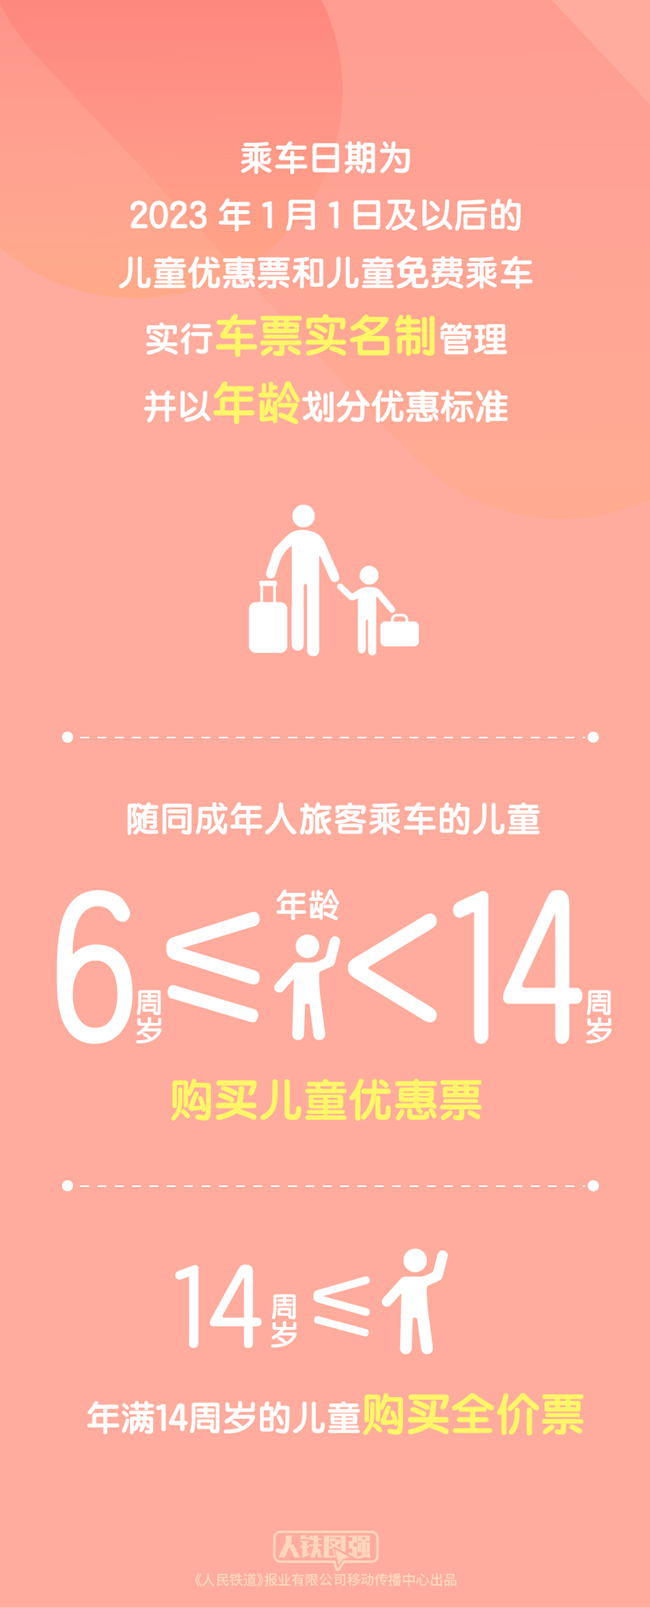 中国铁路：2023年1月1日起 购买铁路儿童票有新变化